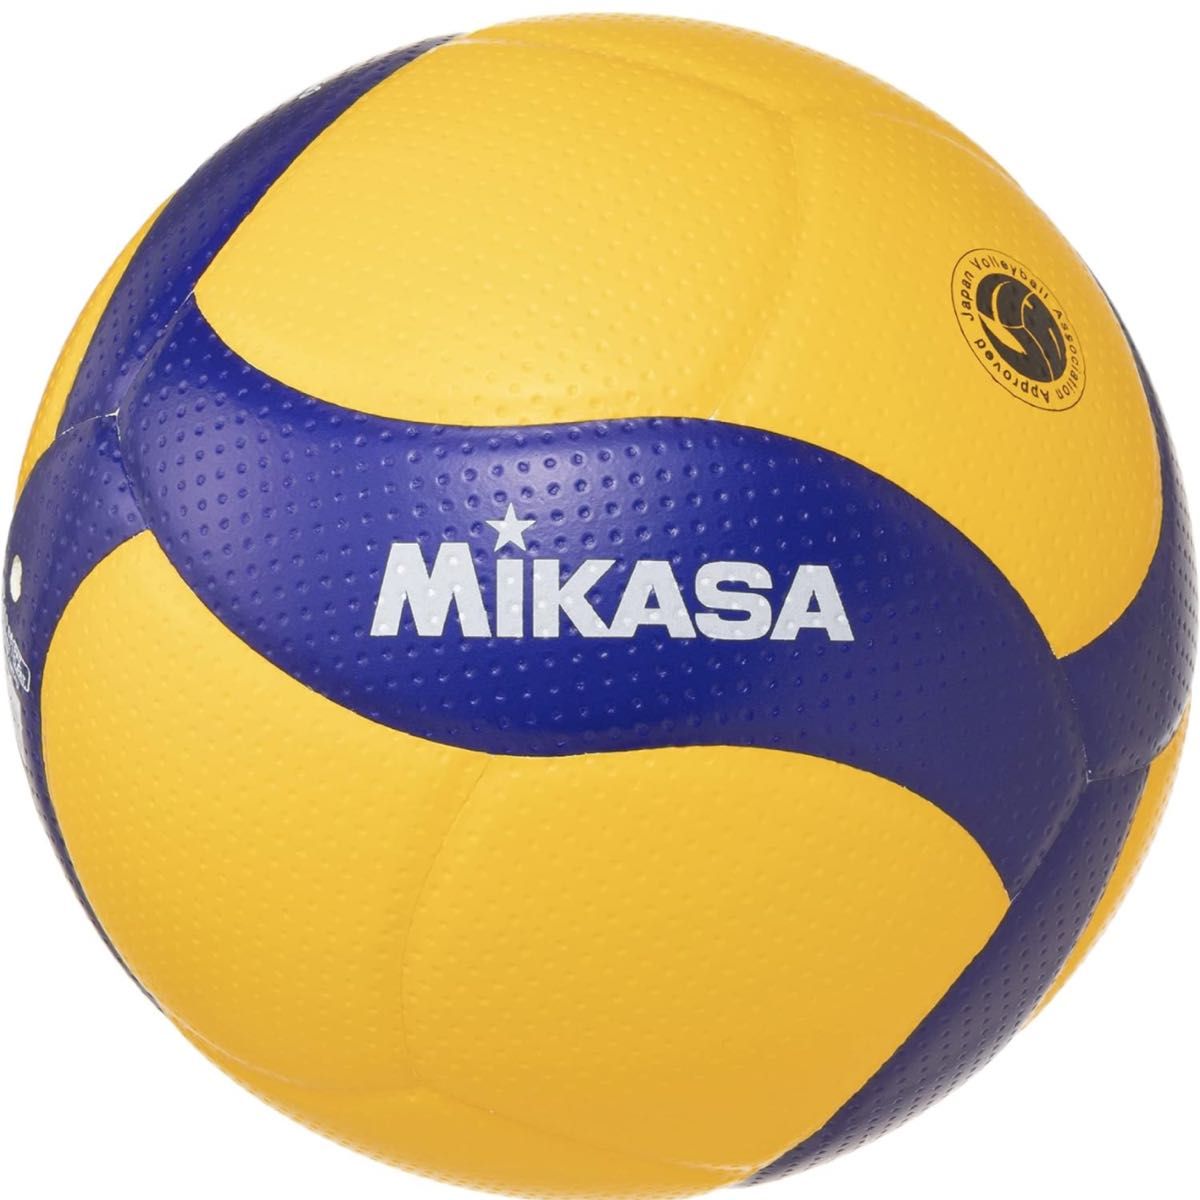 ミカサ(MIKASA) バレーボール 4号 日本バレーボール協会検定球 中学生・婦人用 イエロー/ブルー V400W 